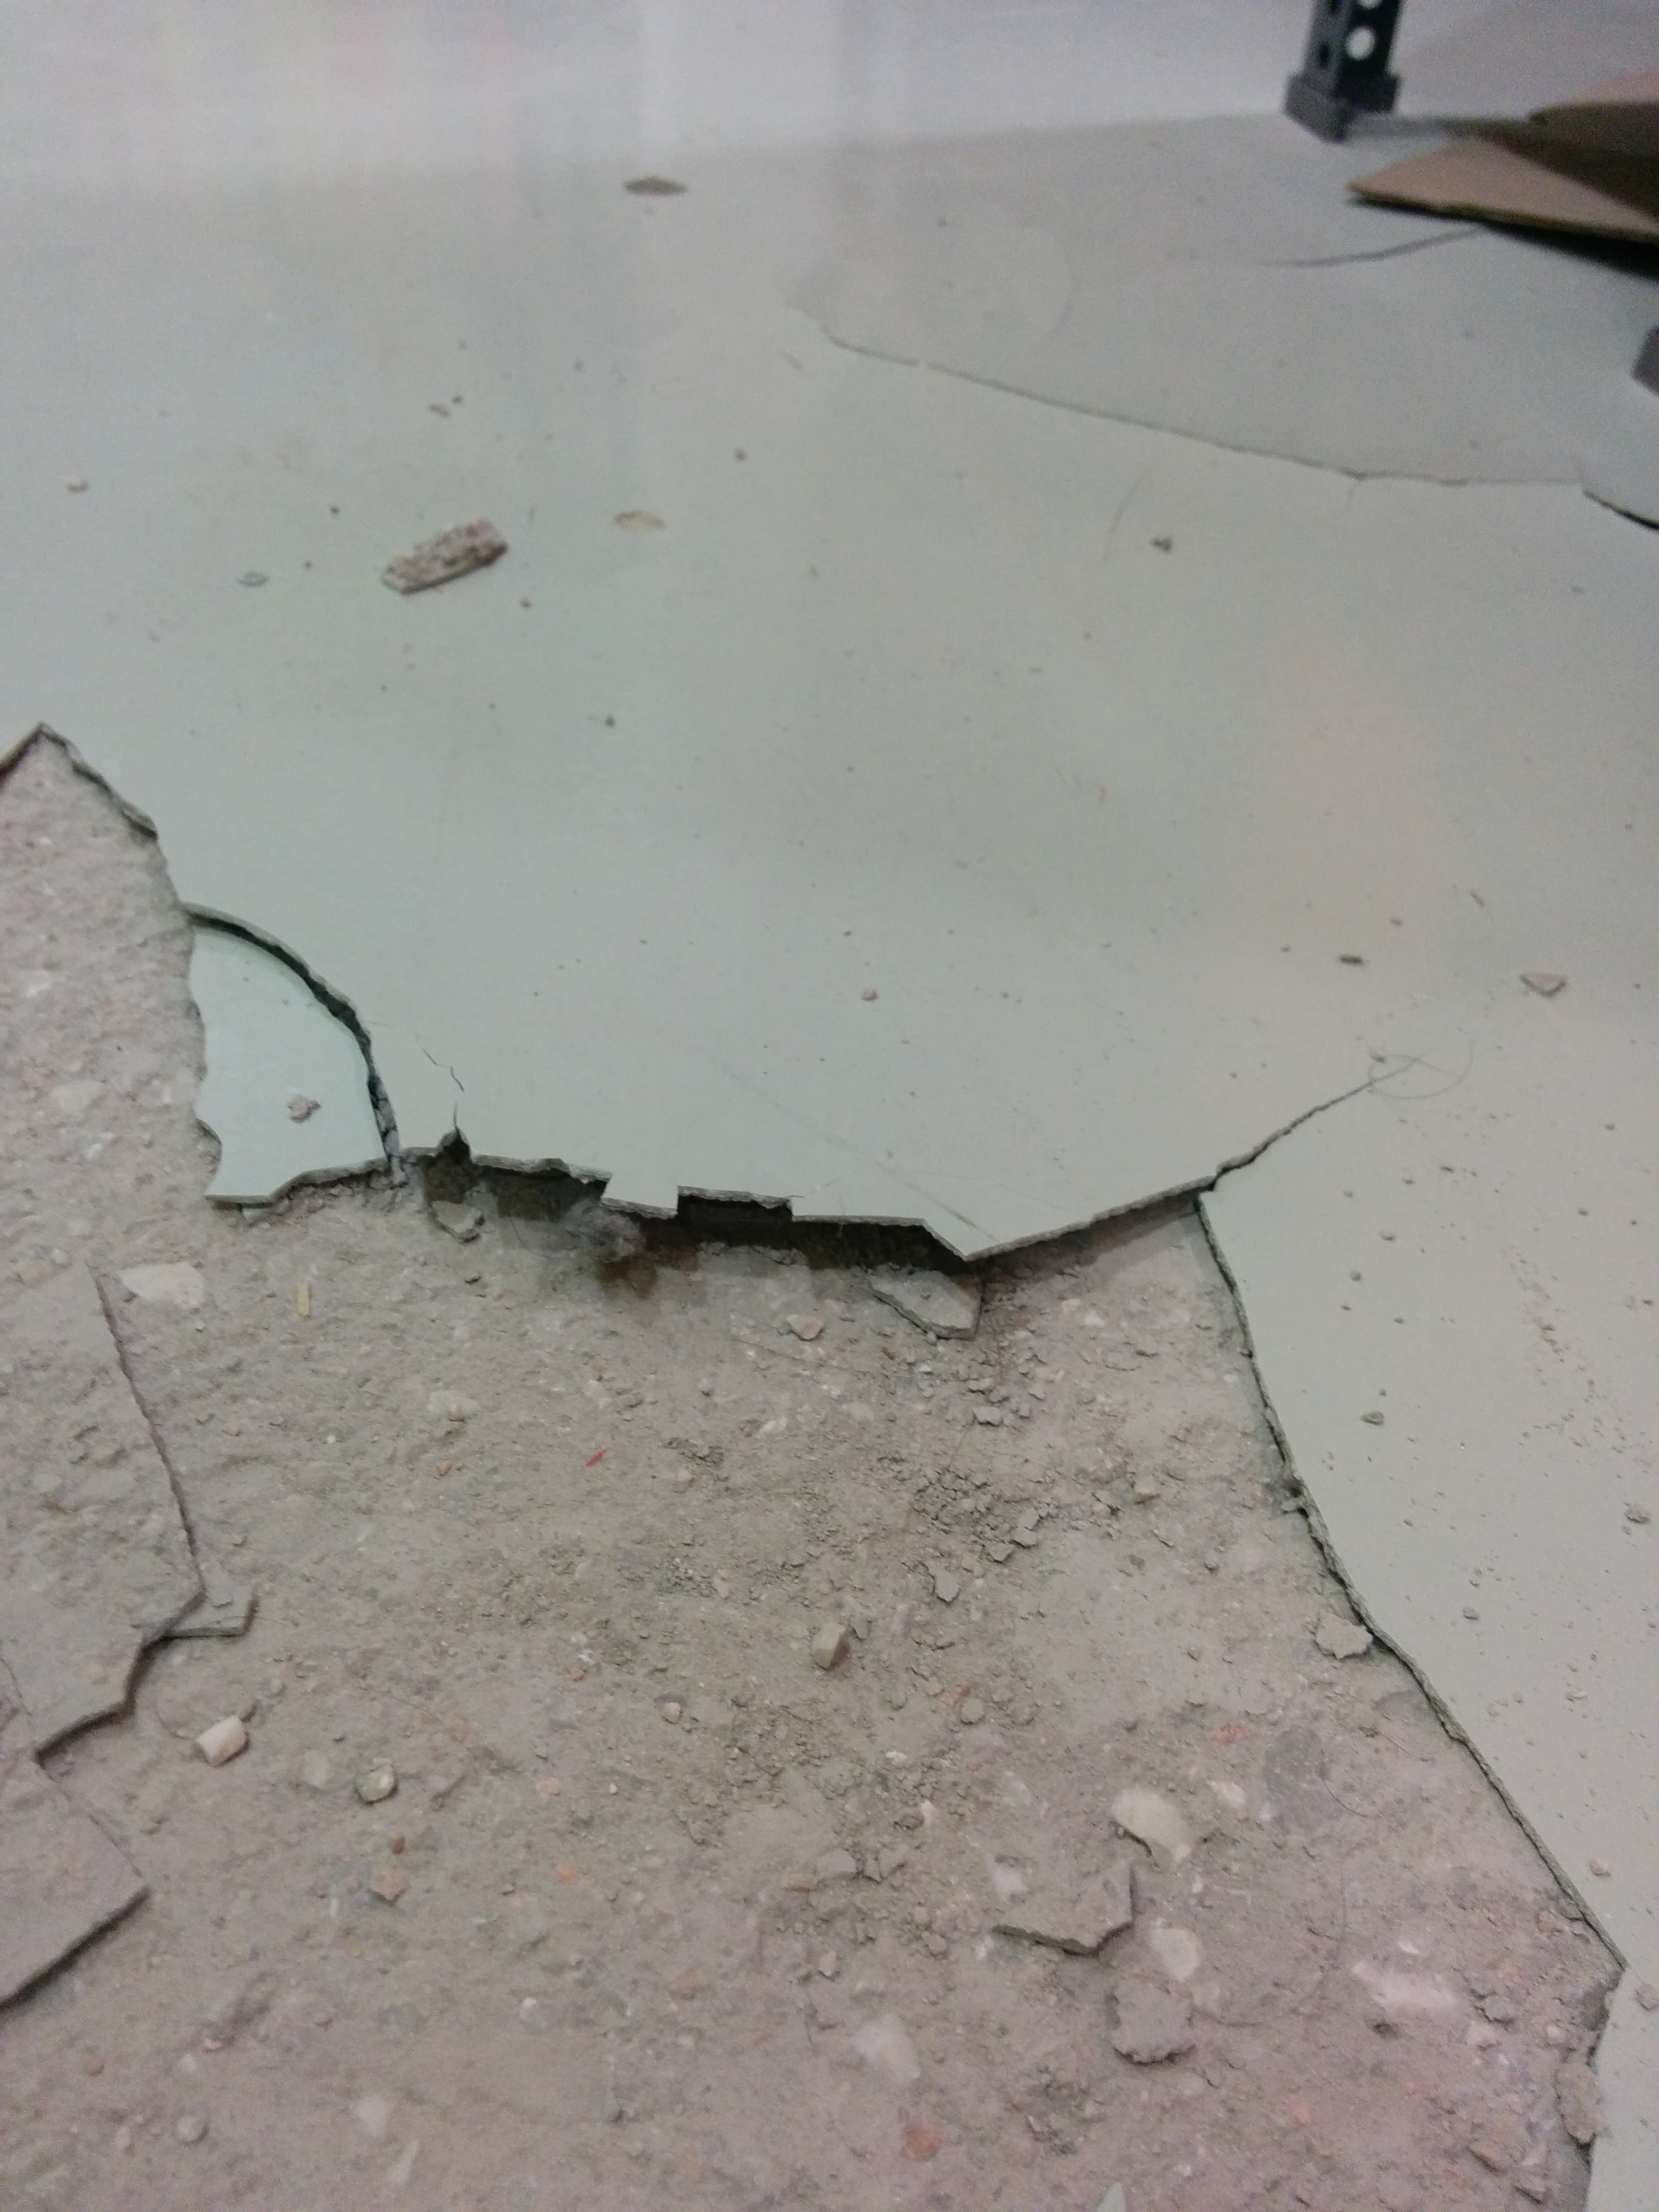 Applying epoxy on rough concrete - 3 useful tips